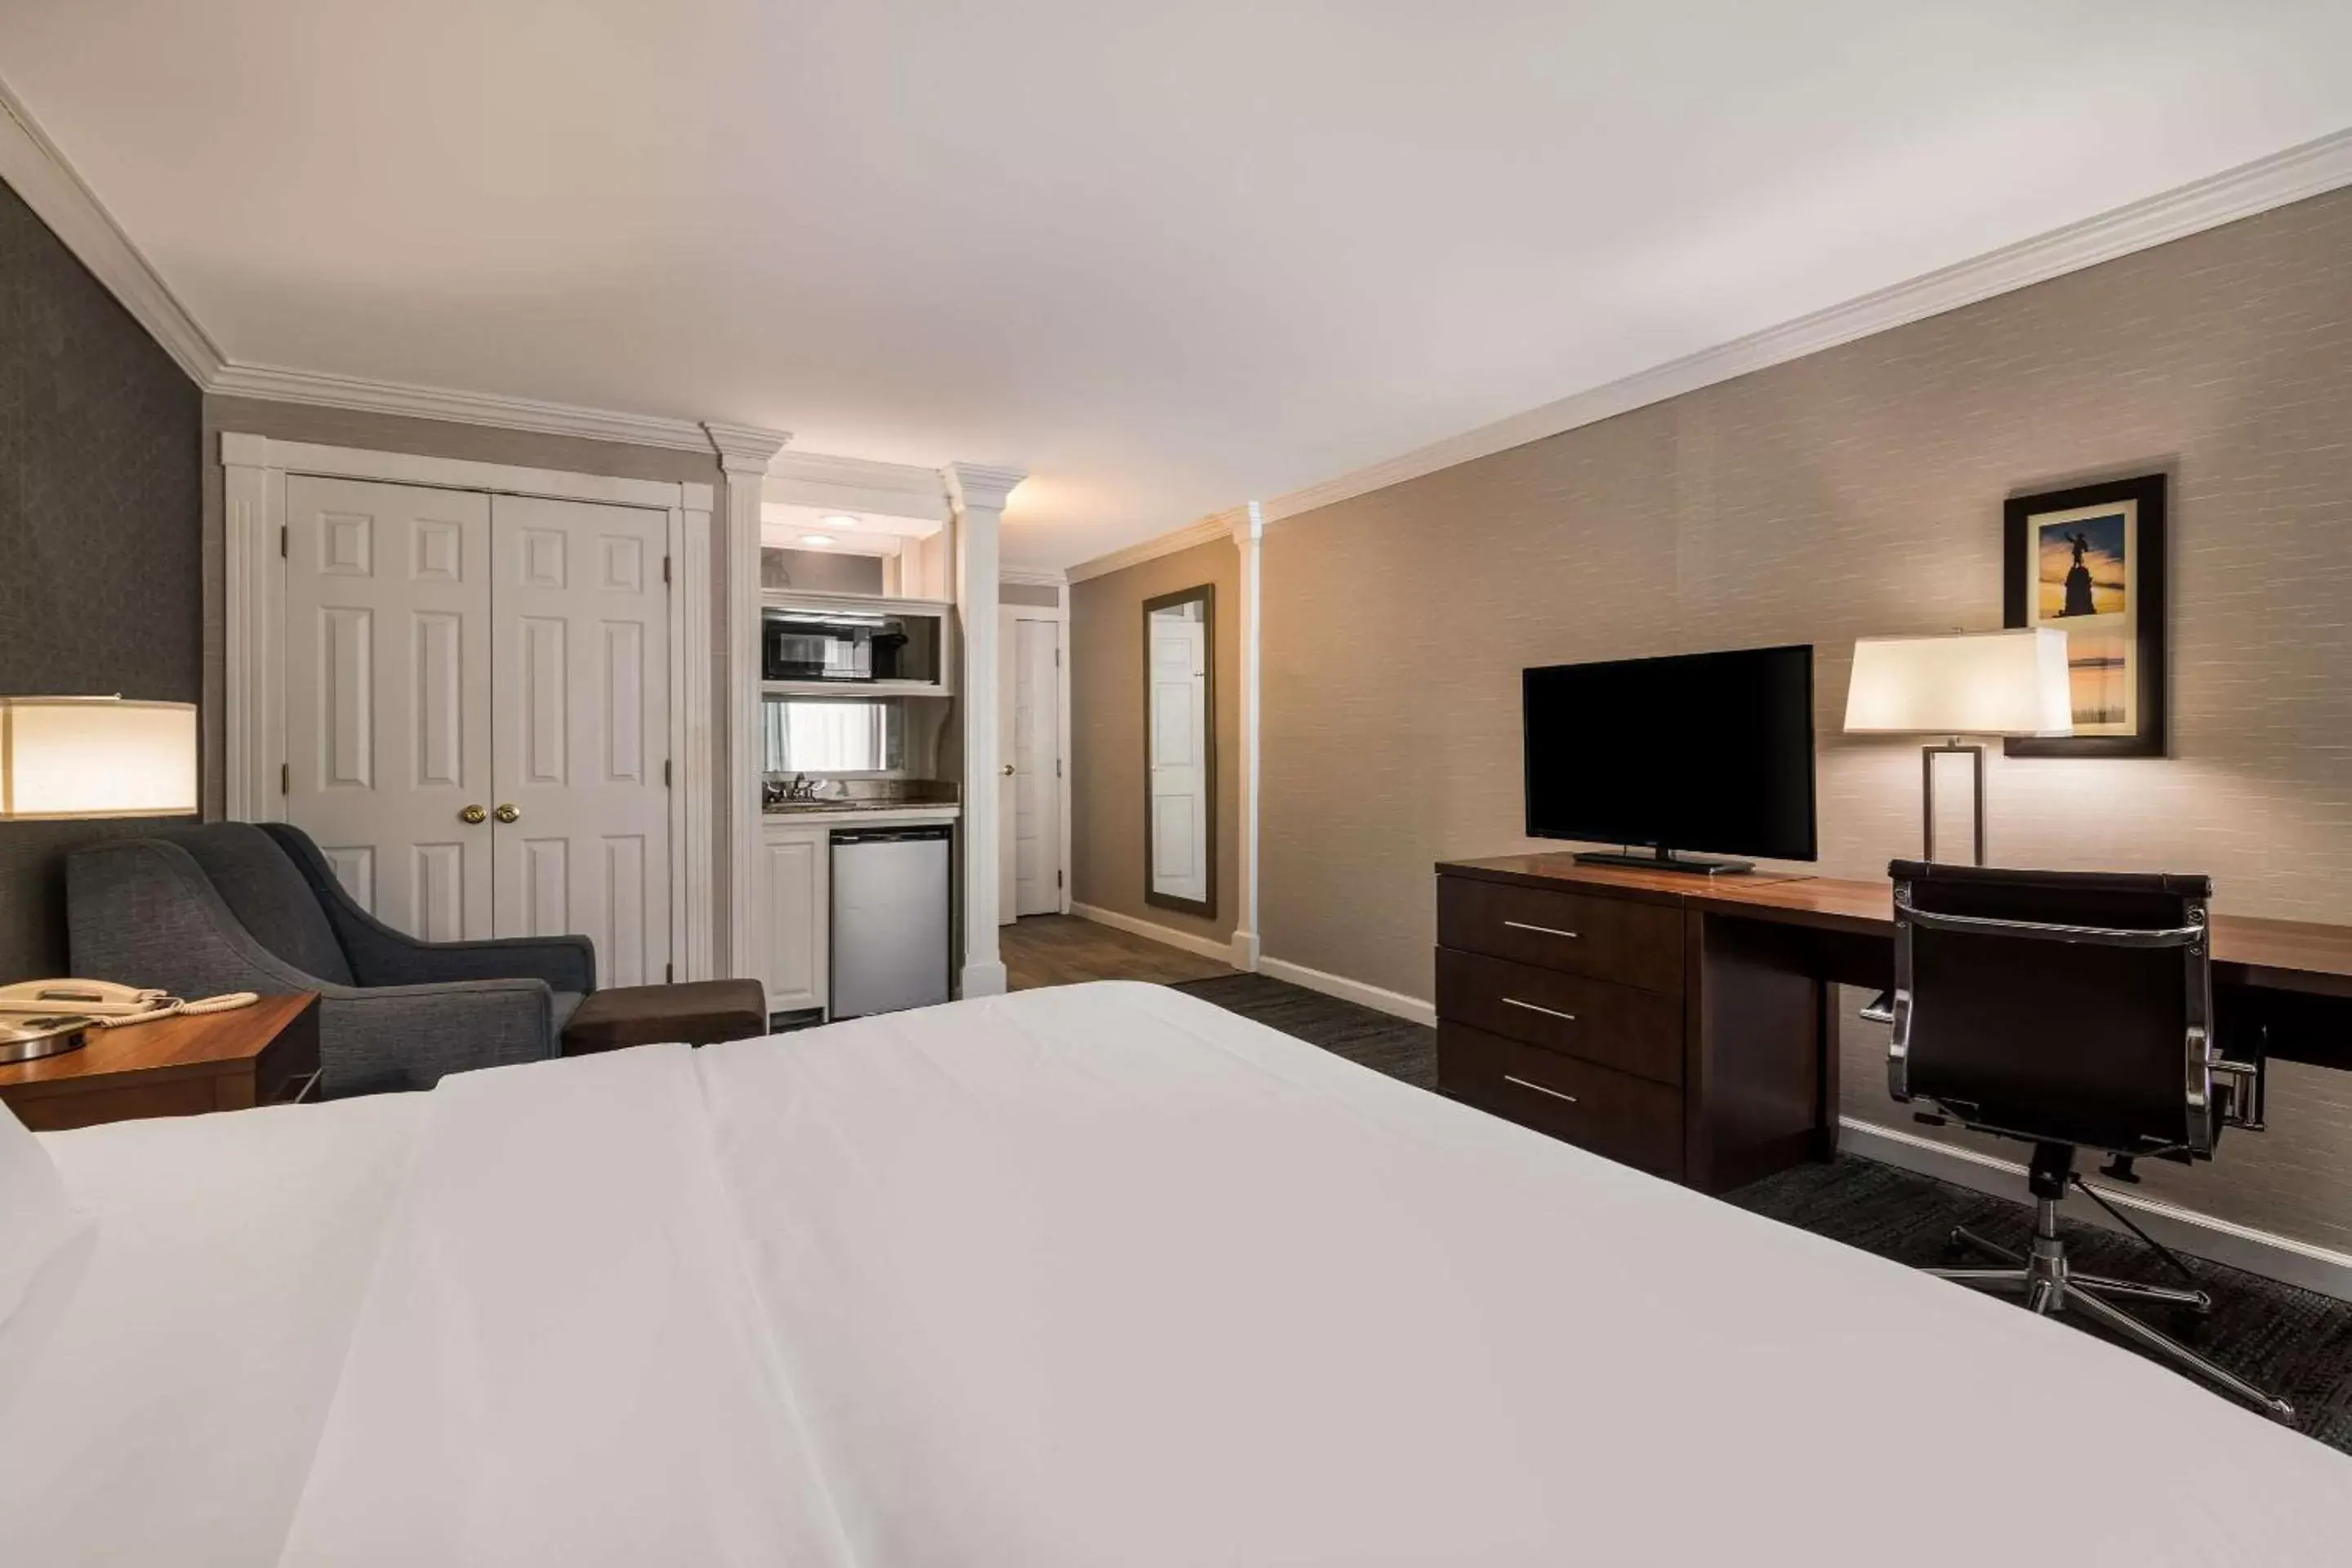 Bedroom, TV/Entertainment Center in Comfort Inn & Suites Plattsburgh - Morrisonville